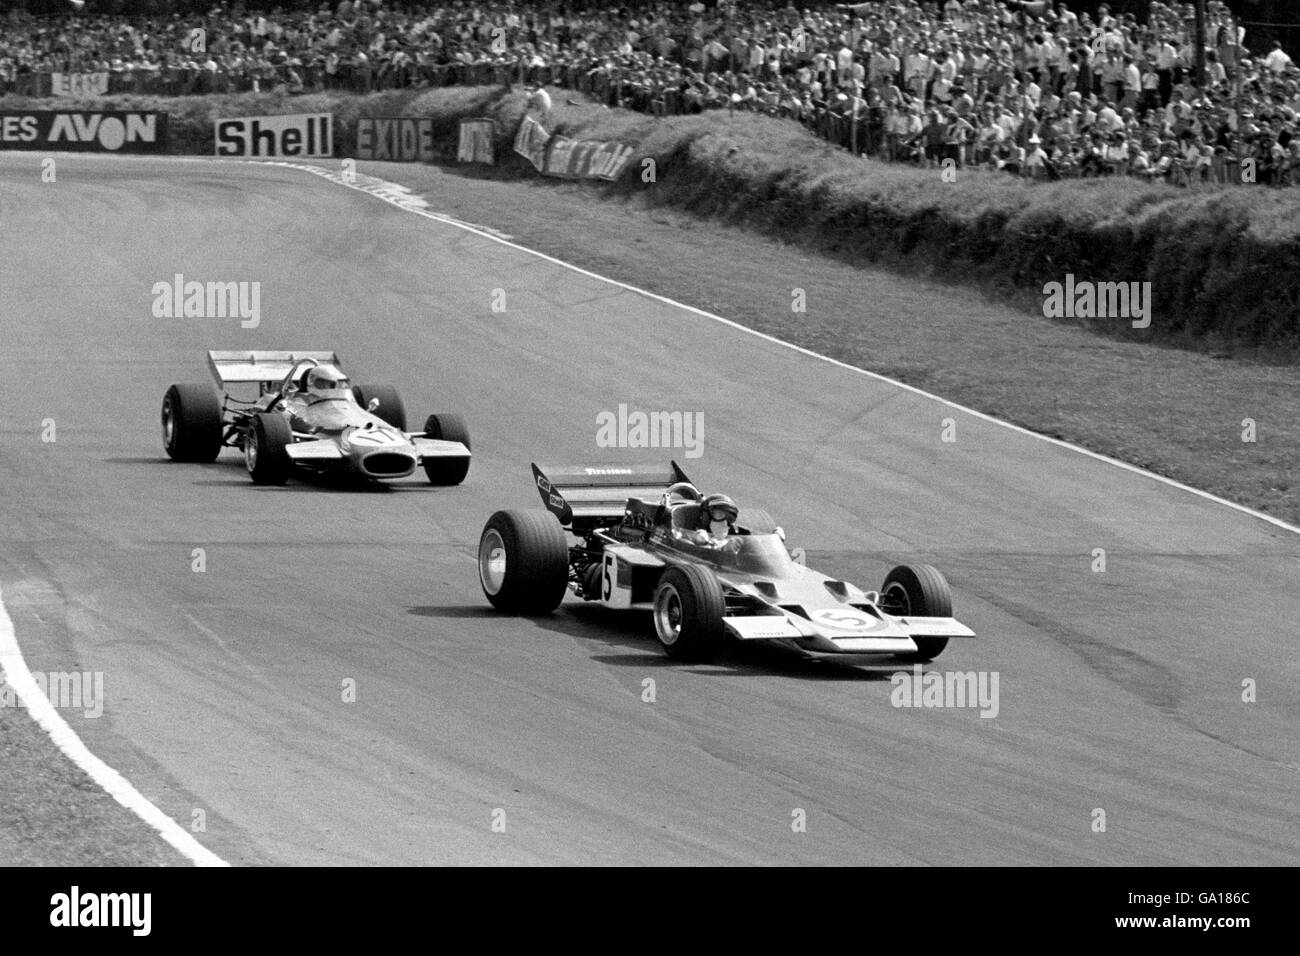 L'austriaco Jochen Rindt (Lotus-Ford) guida l'australiano Jack Brabham (Brabham-Ford) fuori da Druids Bend durante l'odierno Gran Premio britannico del RAC a Brands Hatch. Rindt ha vinto la gara. Foto Stock